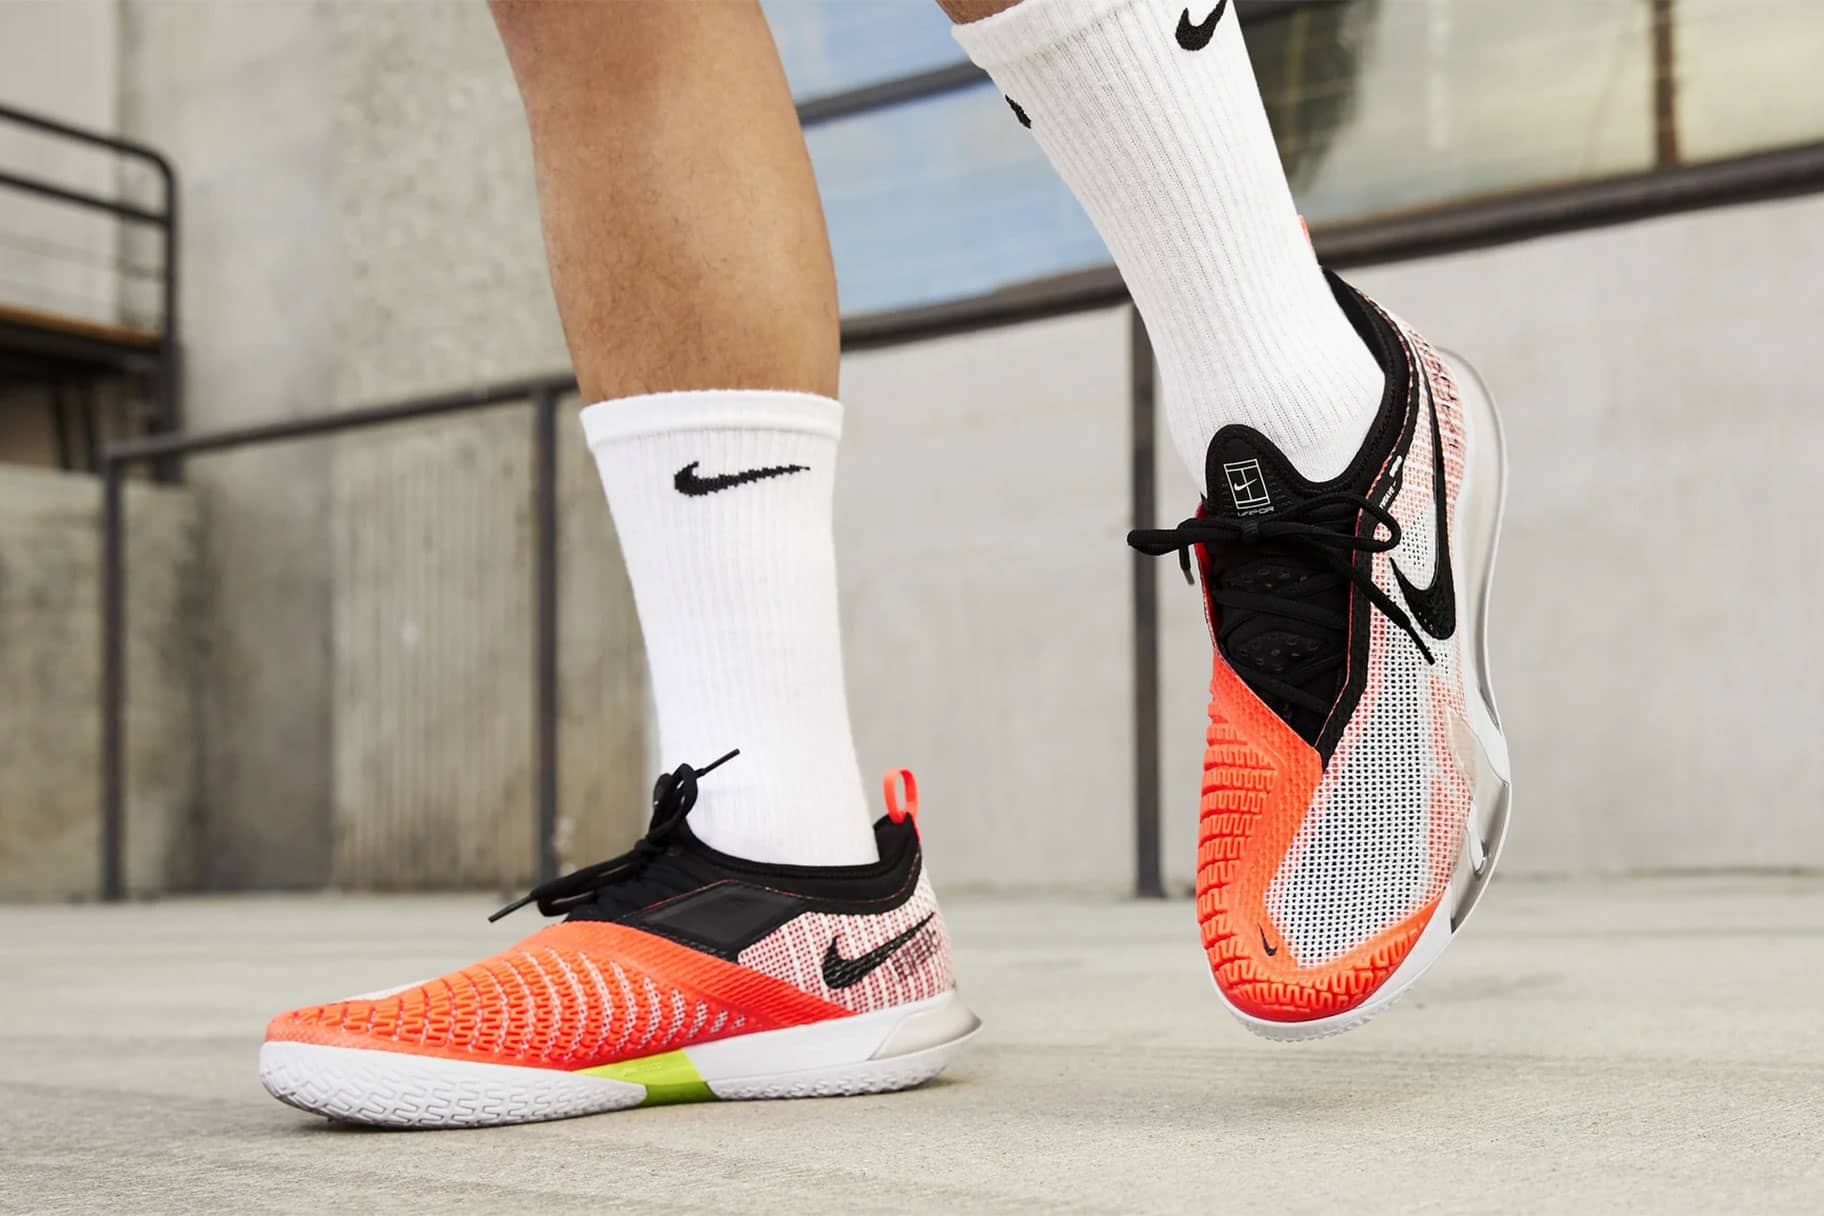 Nike stahlkappenschuhe - Die hochwertigsten Nike stahlkappenschuhe auf einen Blick